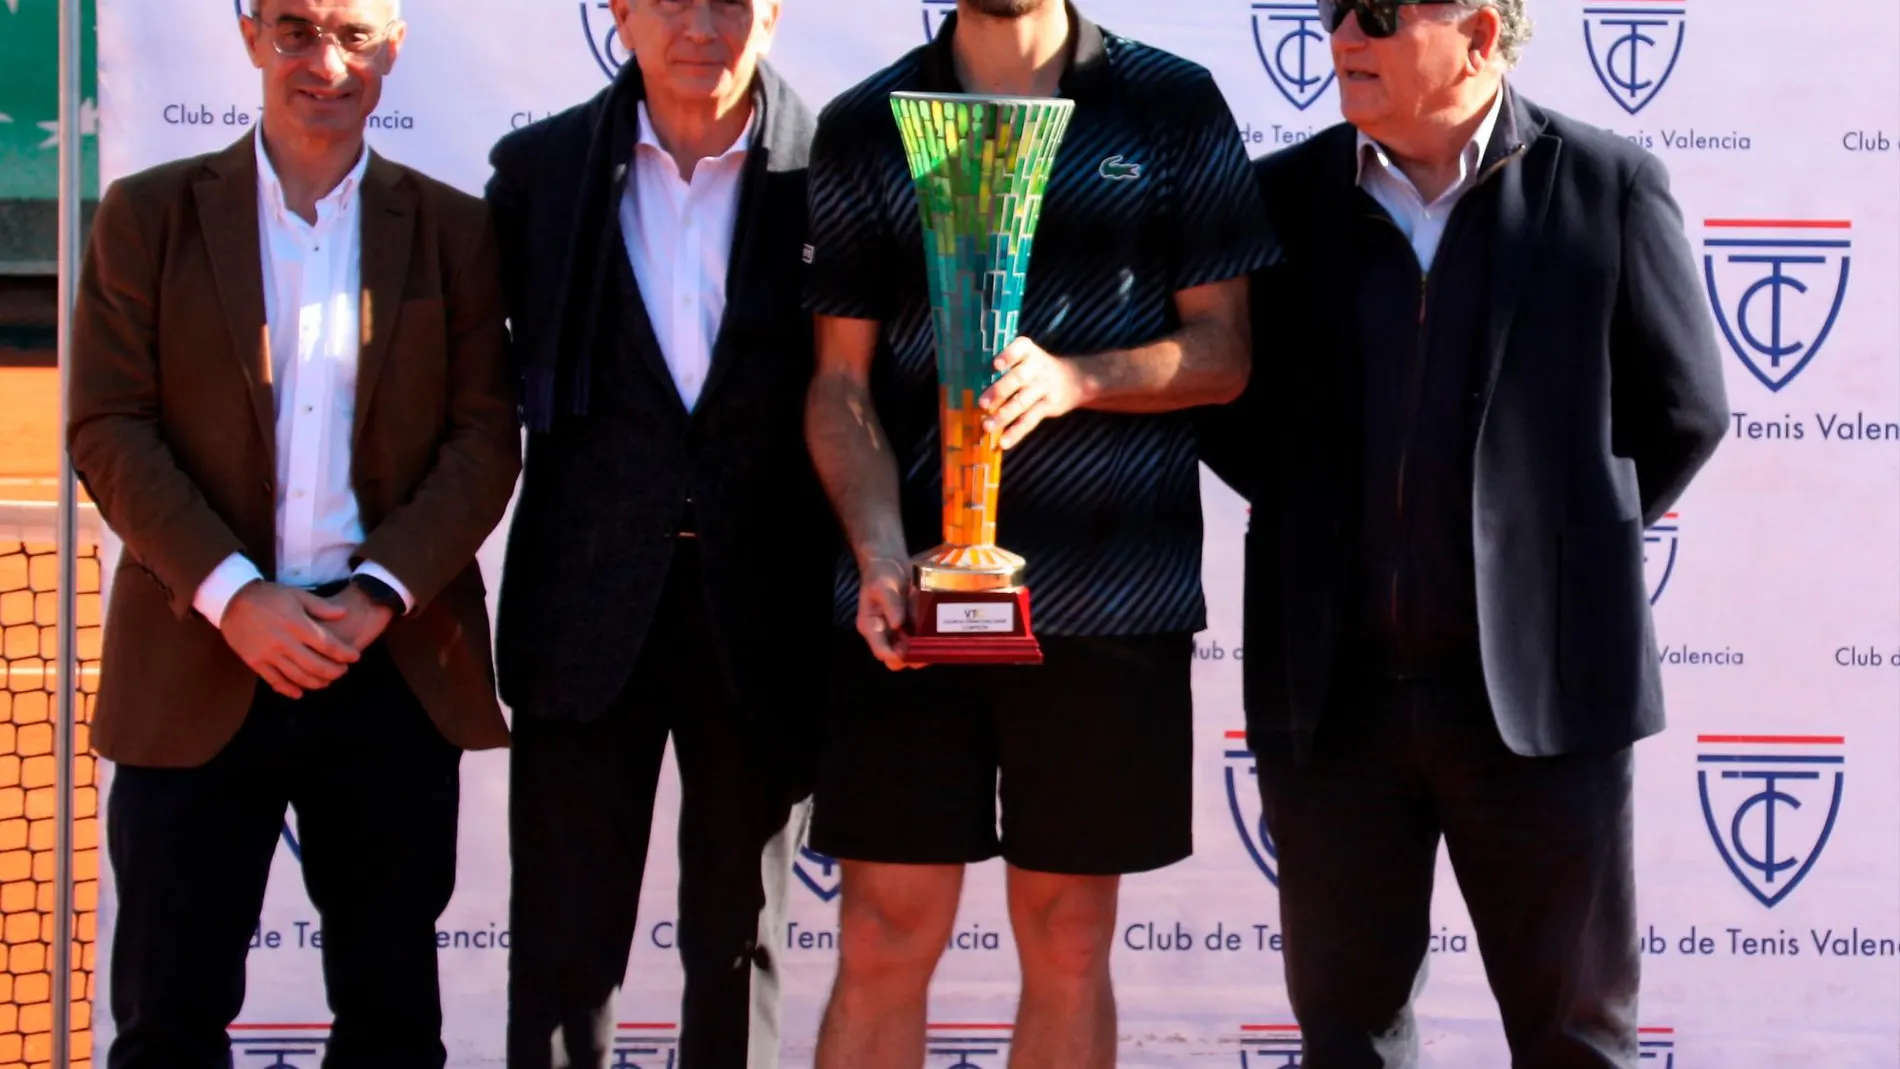 El campeón posa con su trofeo junto con el presidente del Club de Tenis Valencia, Ramiro Verdejo